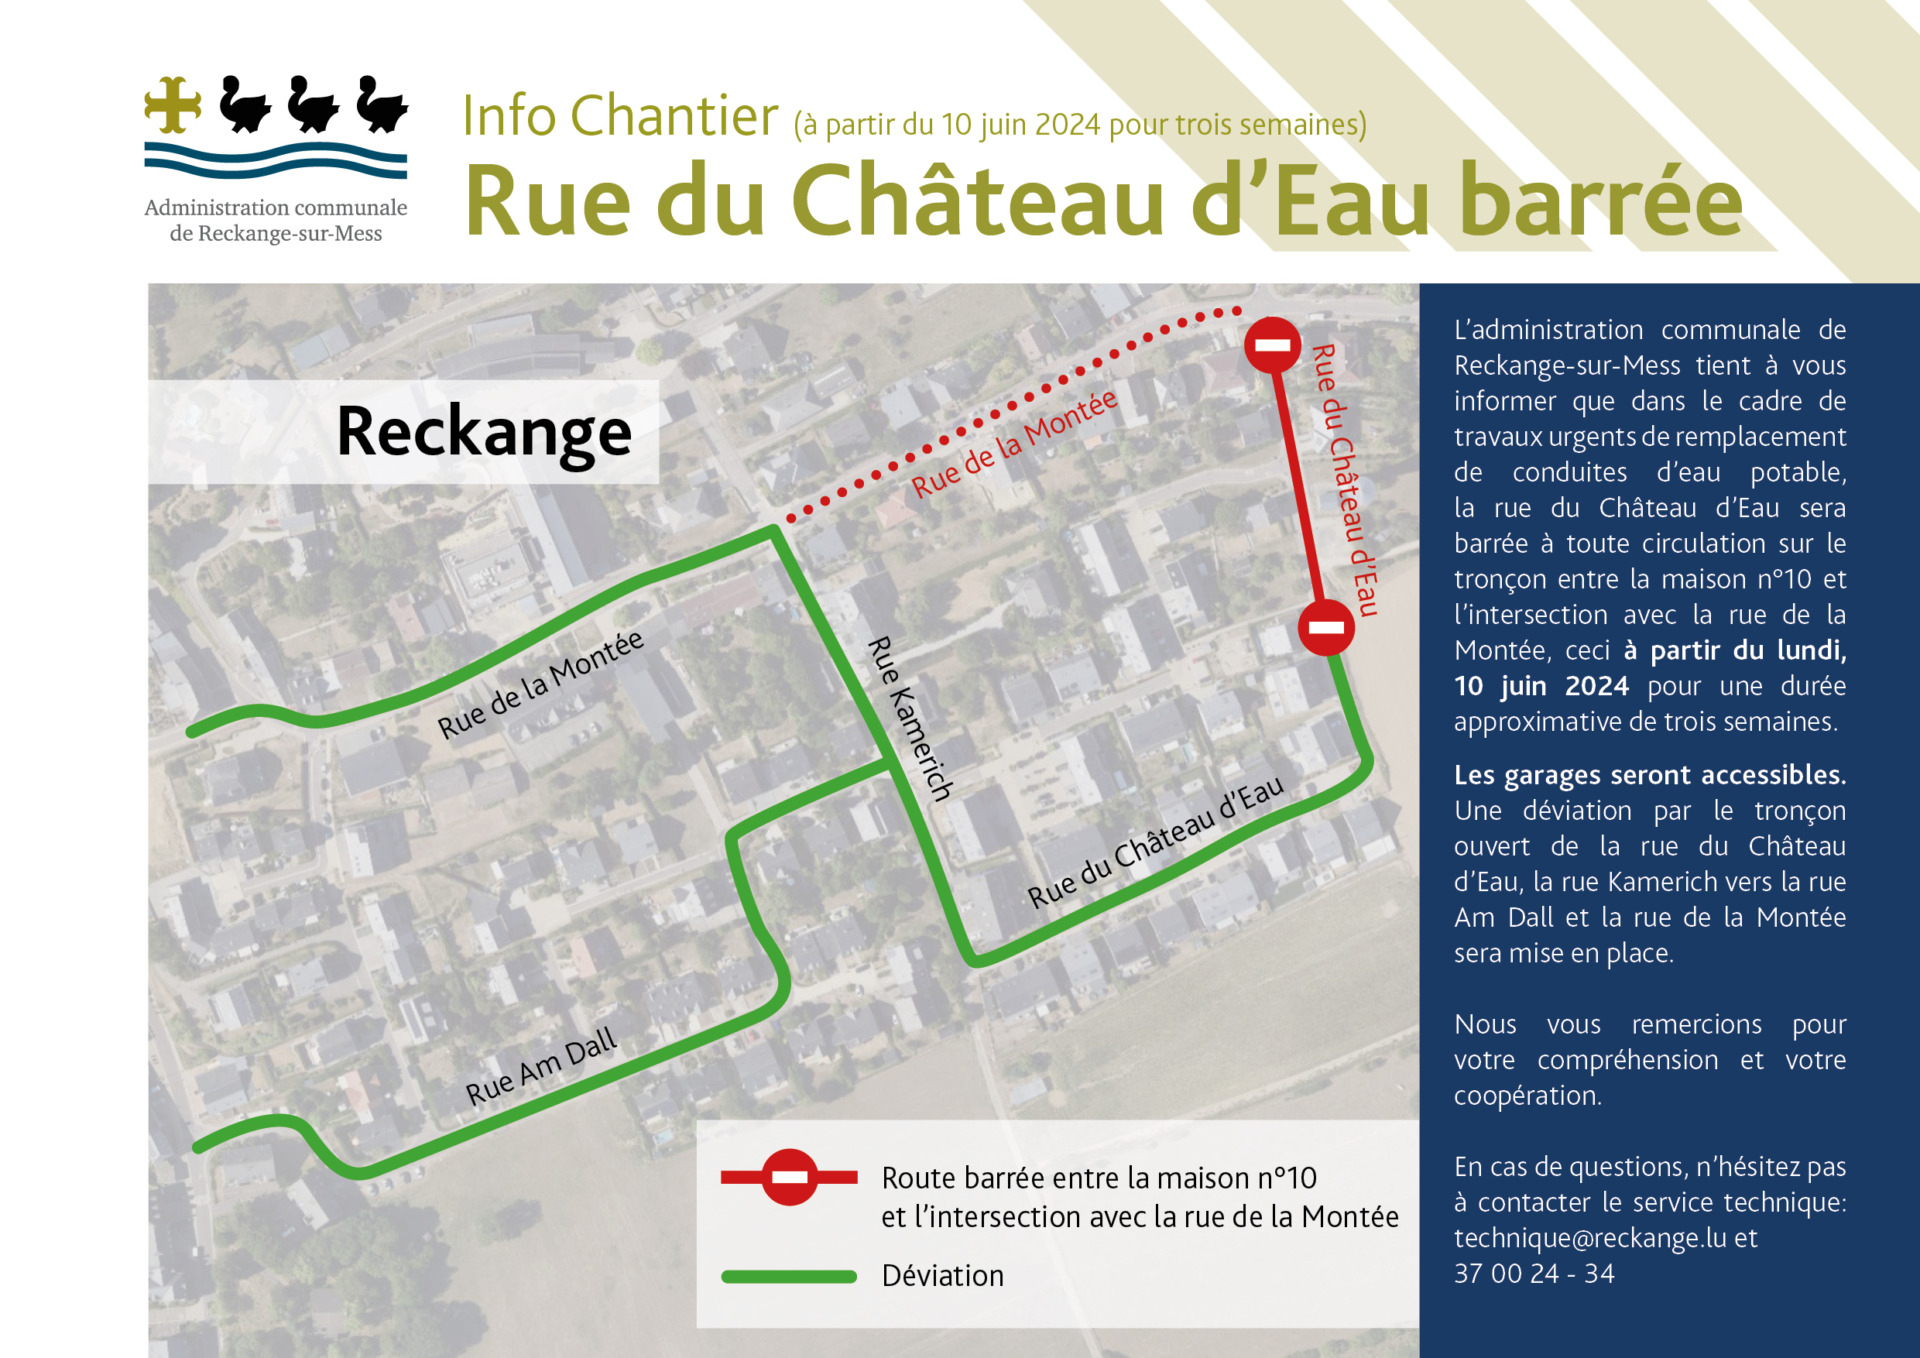 Info Chantier - Rue du Château d'Eau barrée